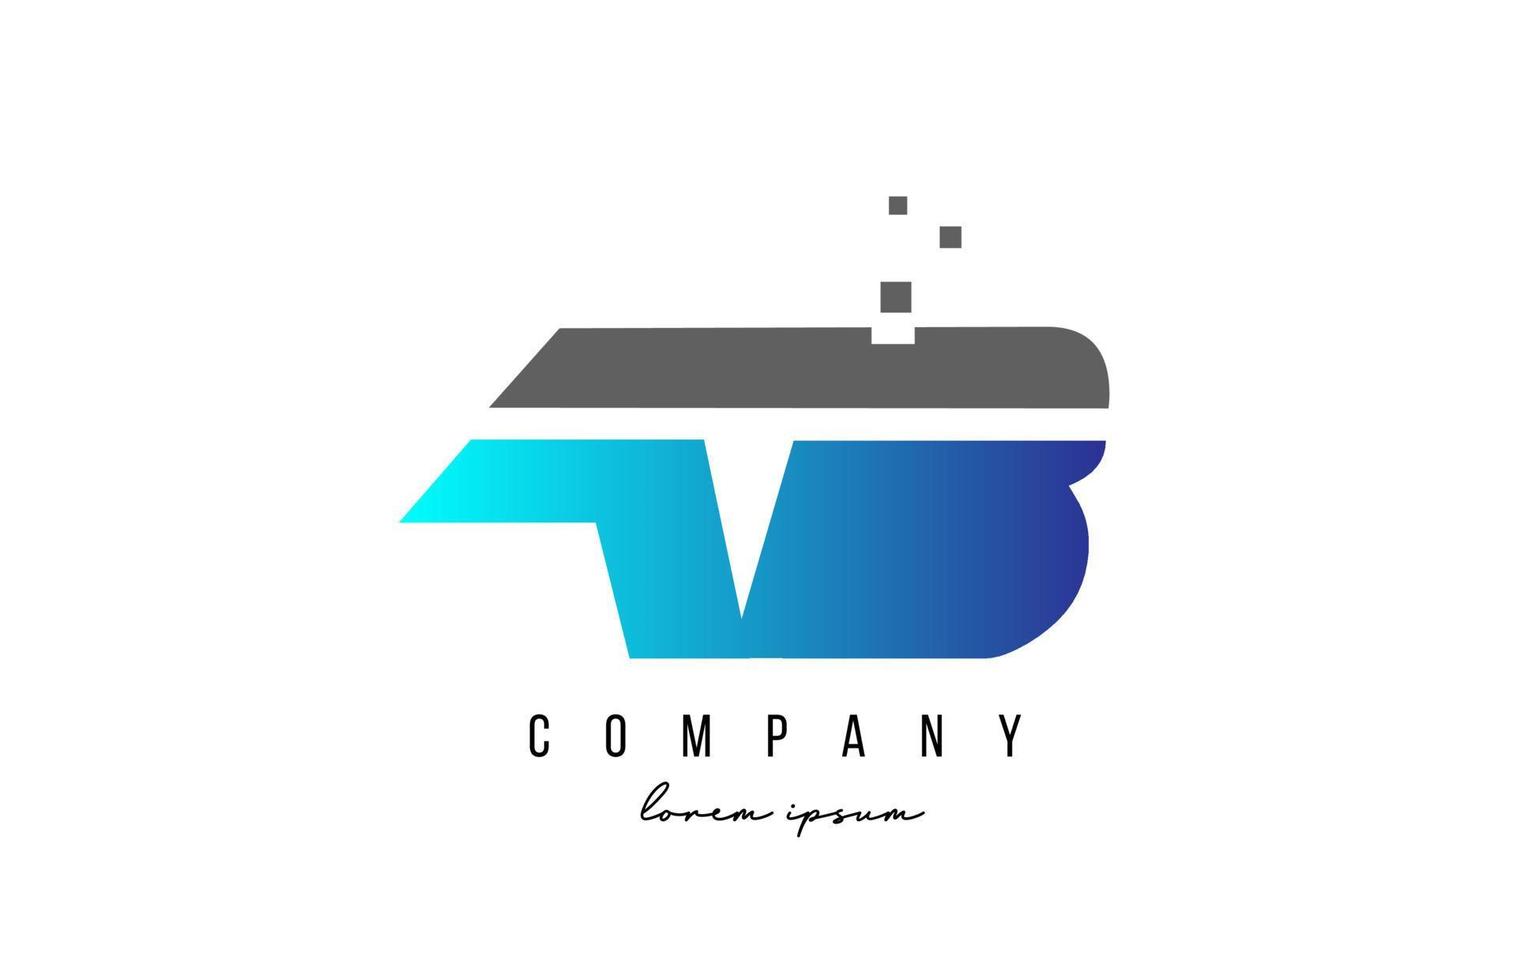 ab ab combinación de logotipo de letra del alfabeto en color azul y gris. Diseño de icono creativo para empresa y negocio. vector